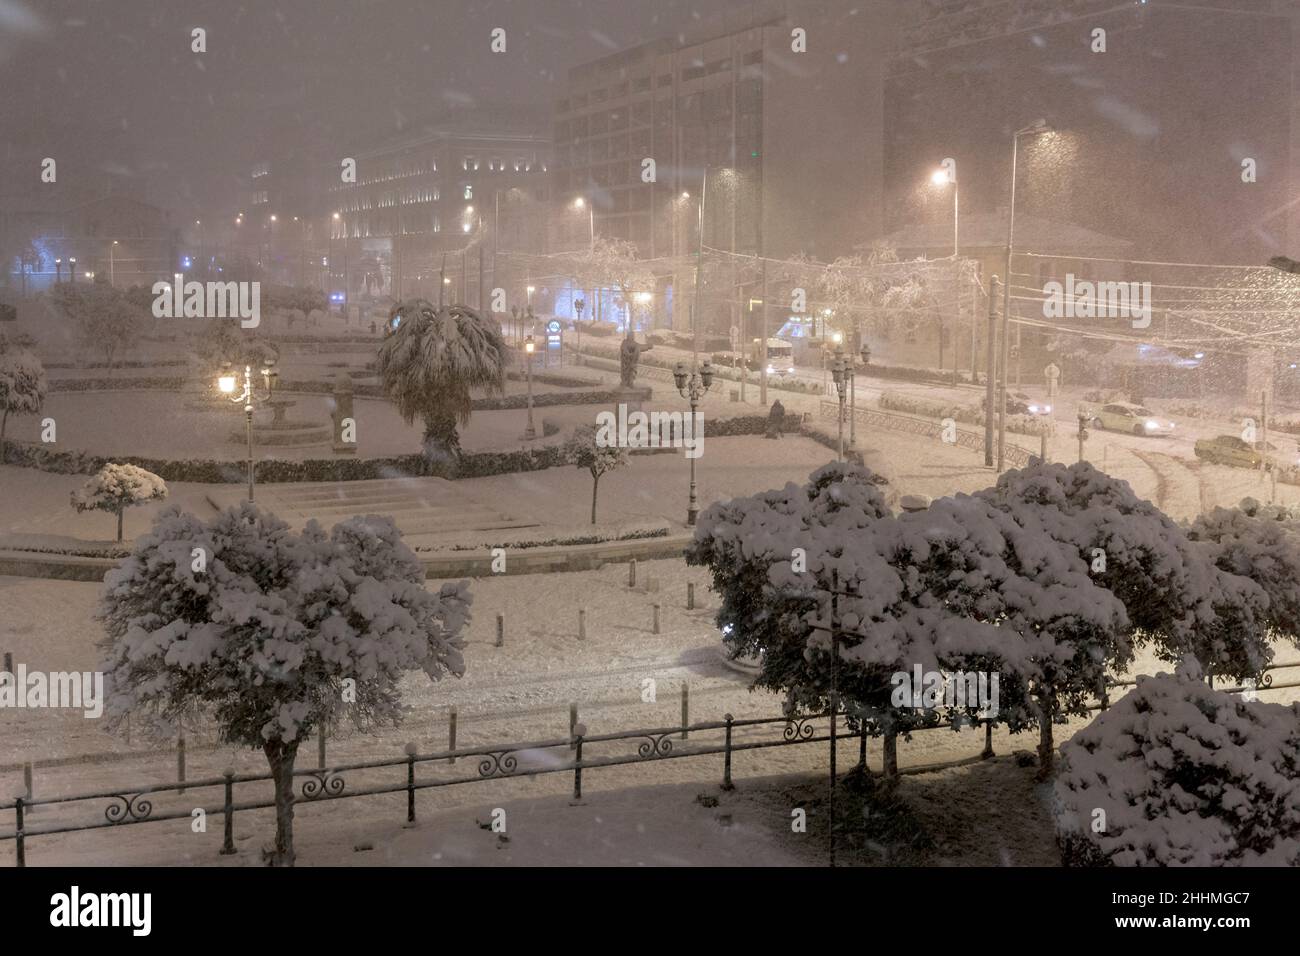 Atene, Grecia, il viale di Panepistimiou è coperto di neve durante le nevicate pesanti nel gennaio 24th 2022, creando un paesaggio urbano sognante Foto Stock